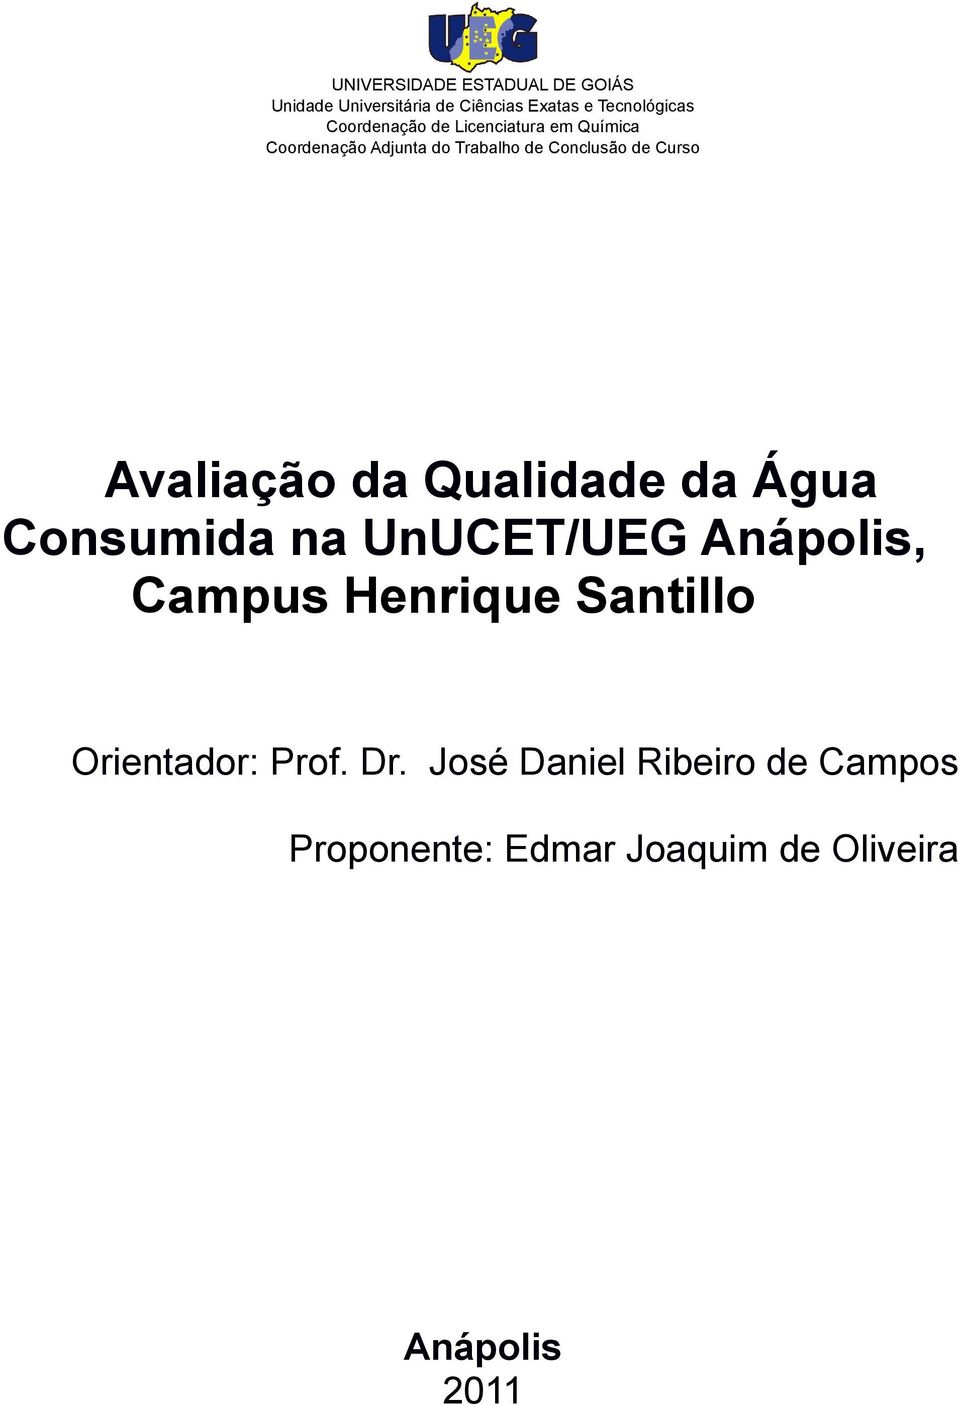 Avaliação da Qualidade da Água Consumida na UnUCET/UEG Anápolis, Campus Henrique Santillo